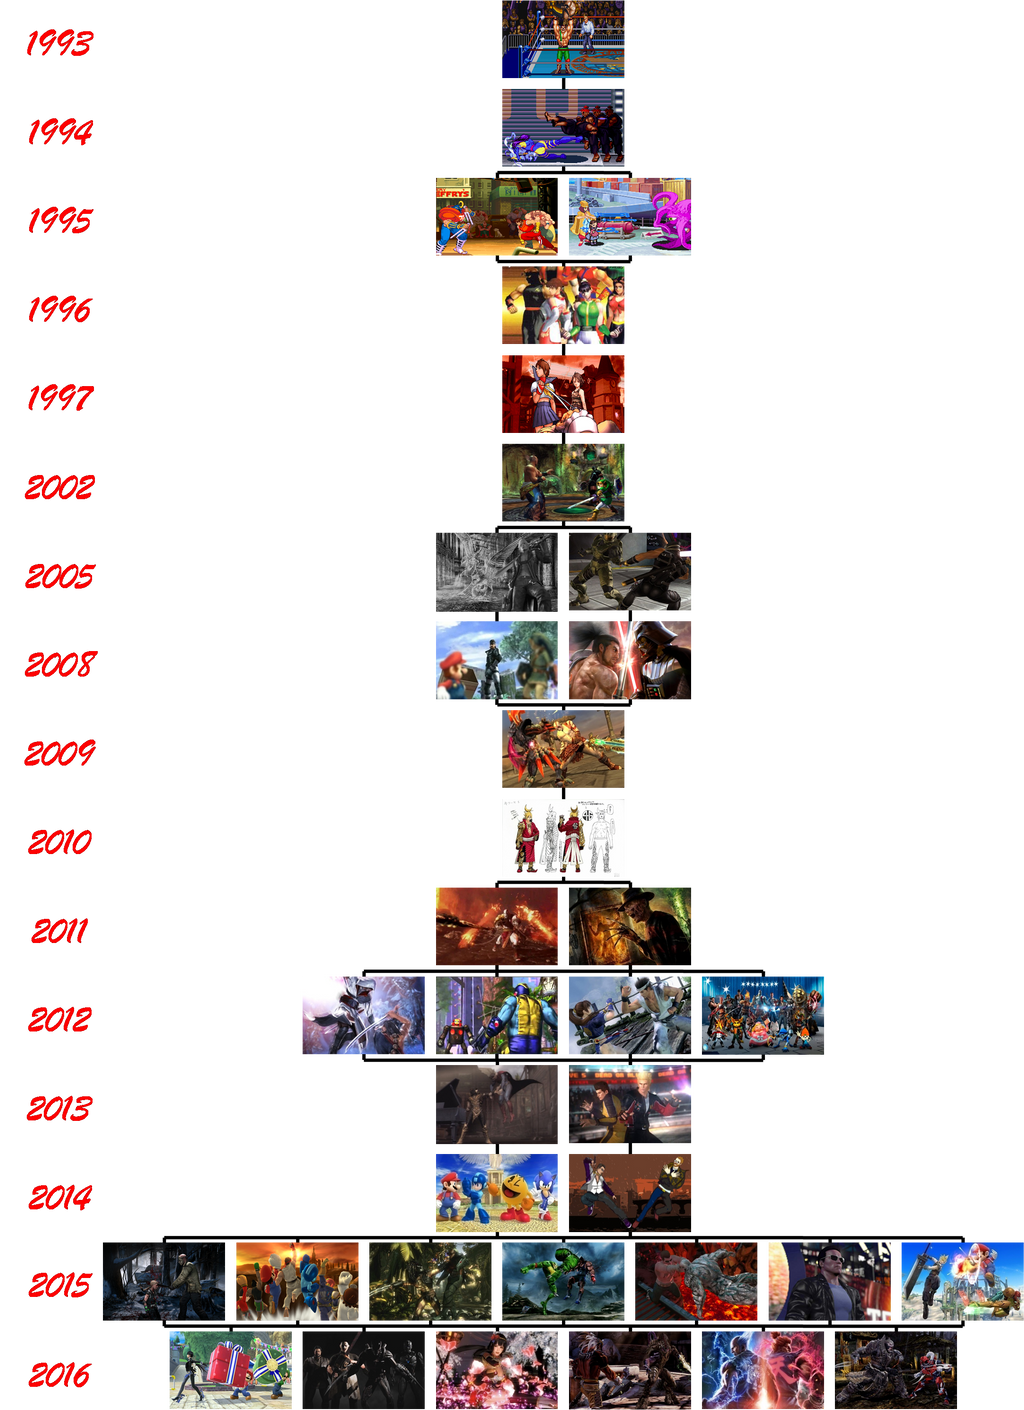 Street Fighter Timeline